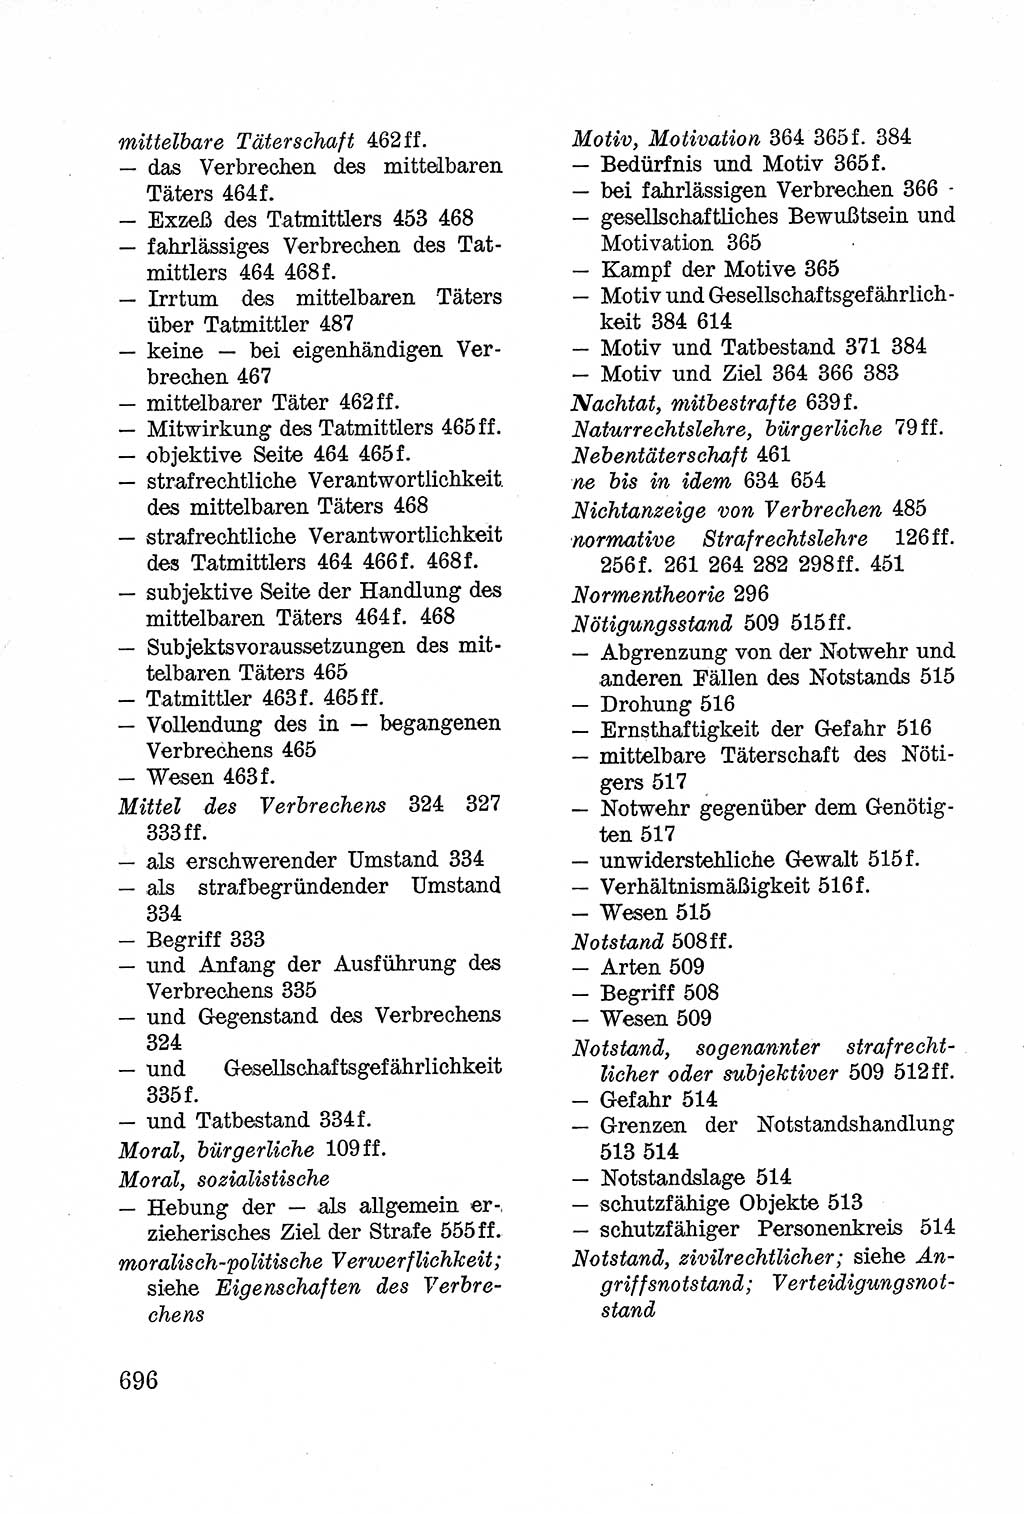 Lehrbuch des Strafrechts der Deutschen Demokratischen Republik (DDR), Allgemeiner Teil 1957, Seite 696 (Lb. Strafr. DDR AT 1957, S. 696)